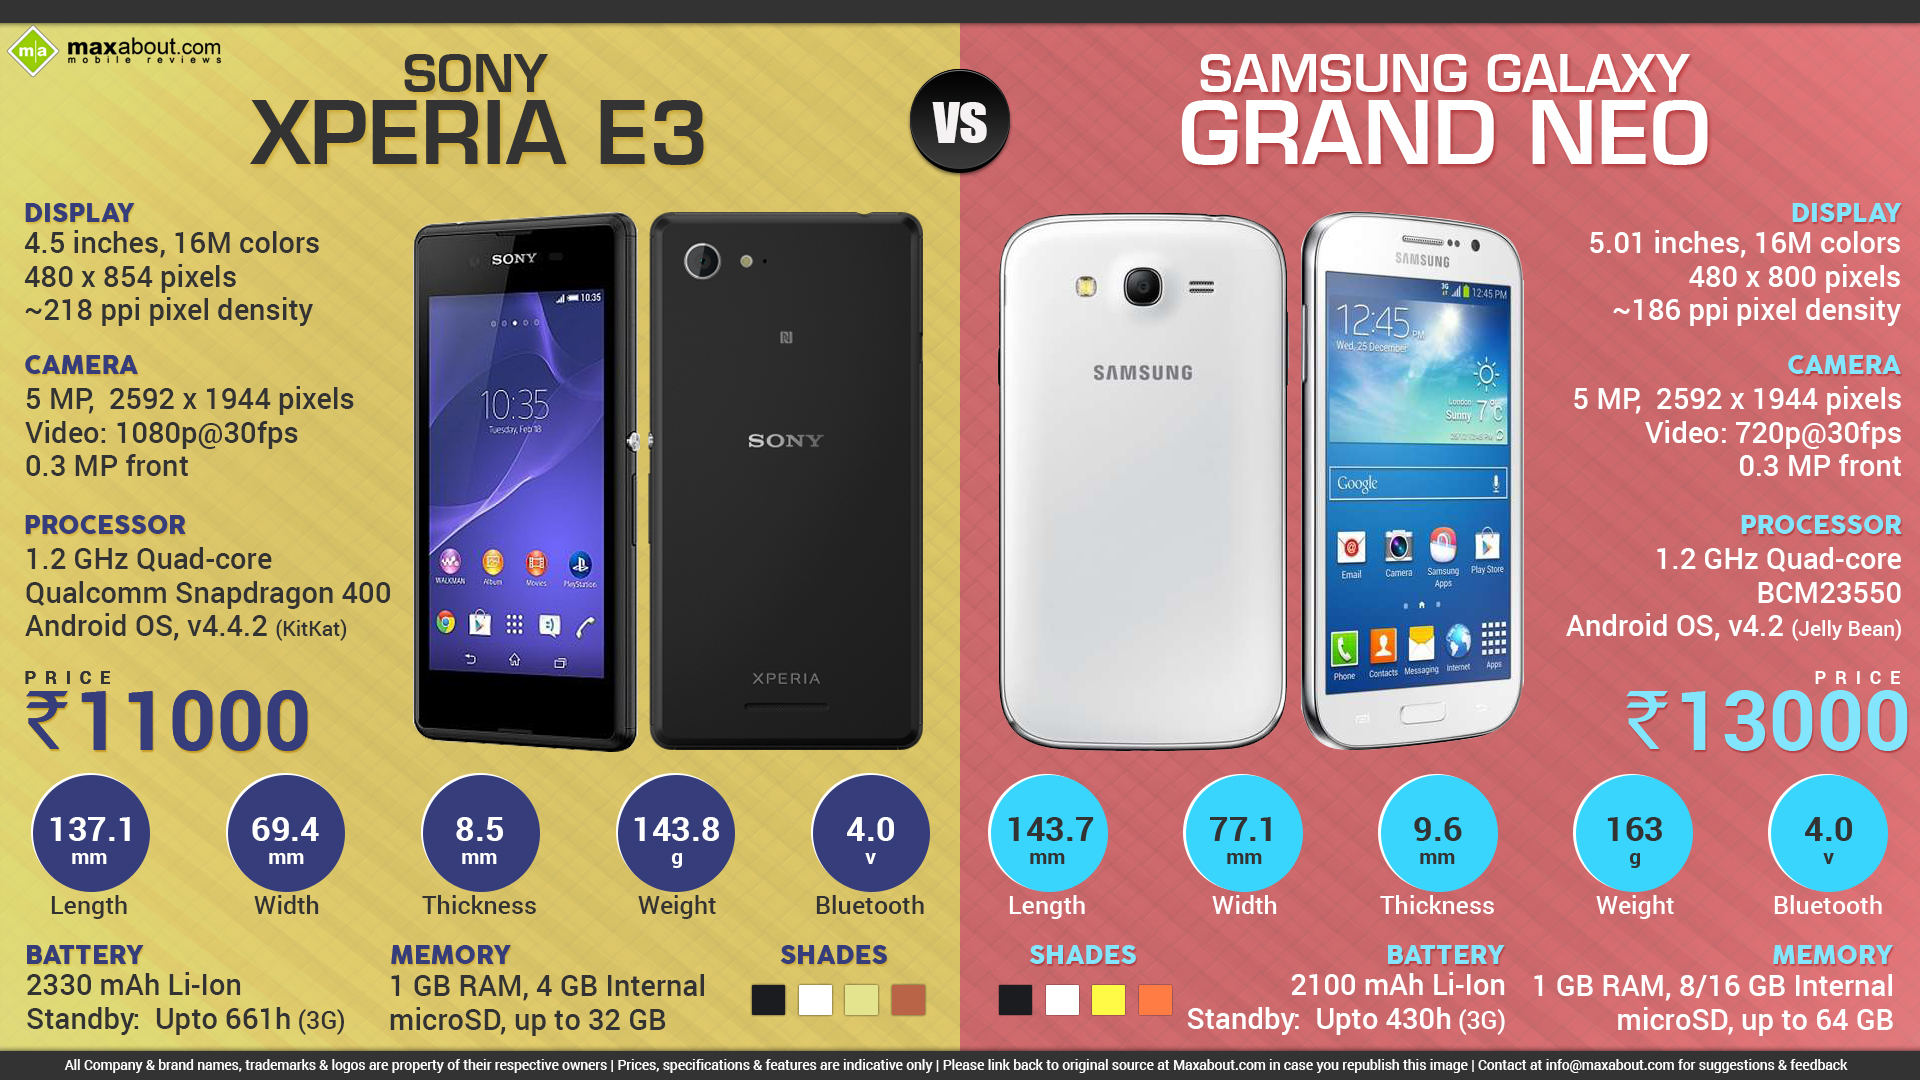 Samsung Galaxy Grand Neo vs. Sony Xperia E3